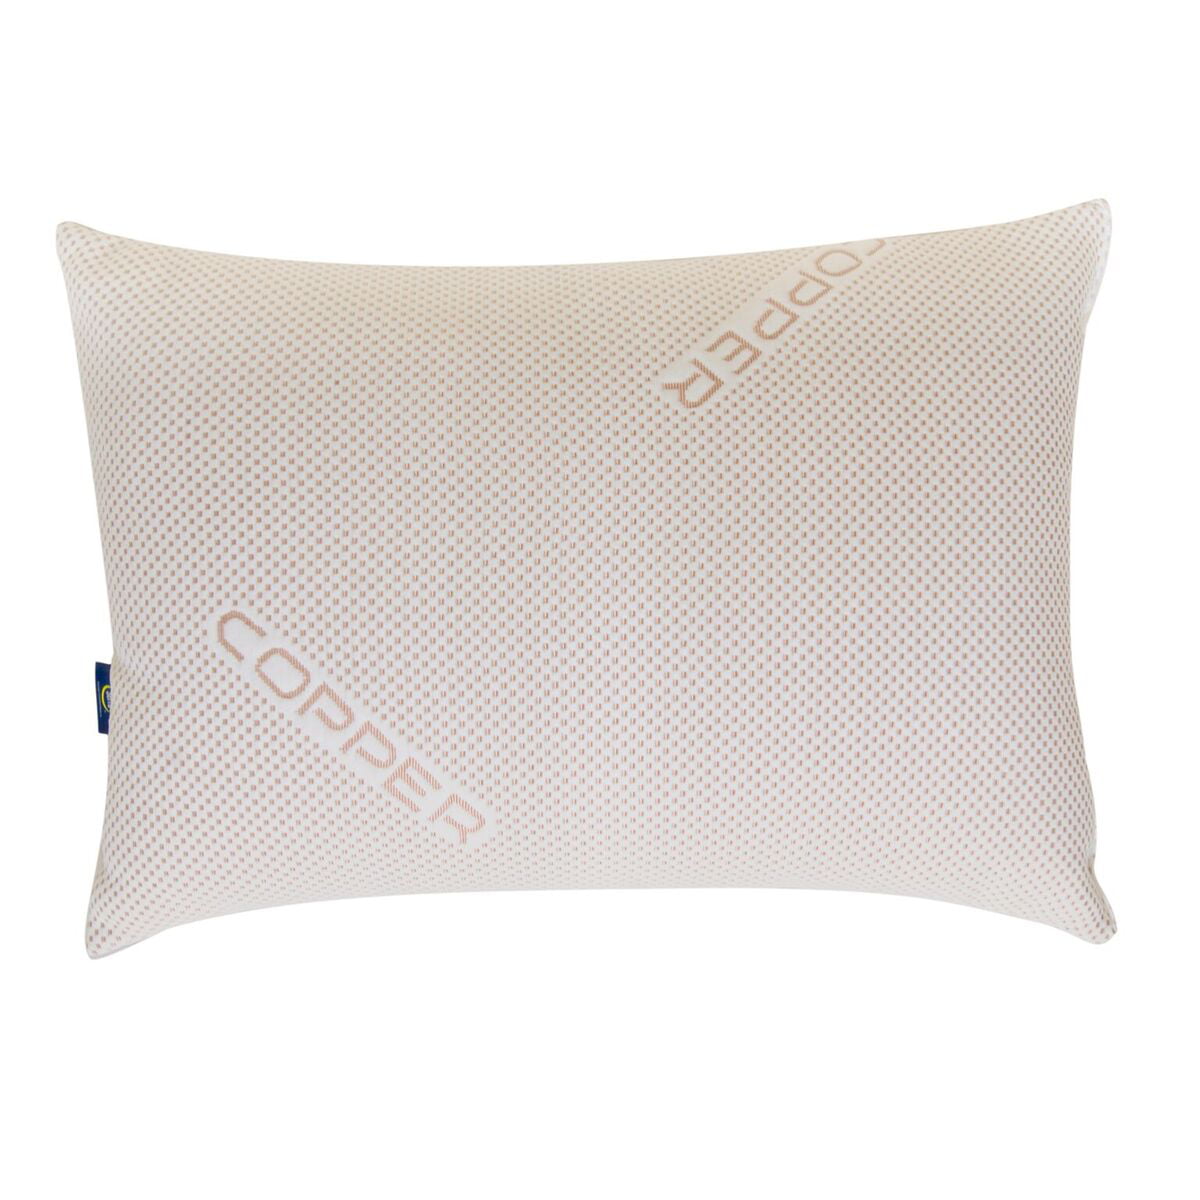 copper sense pillow